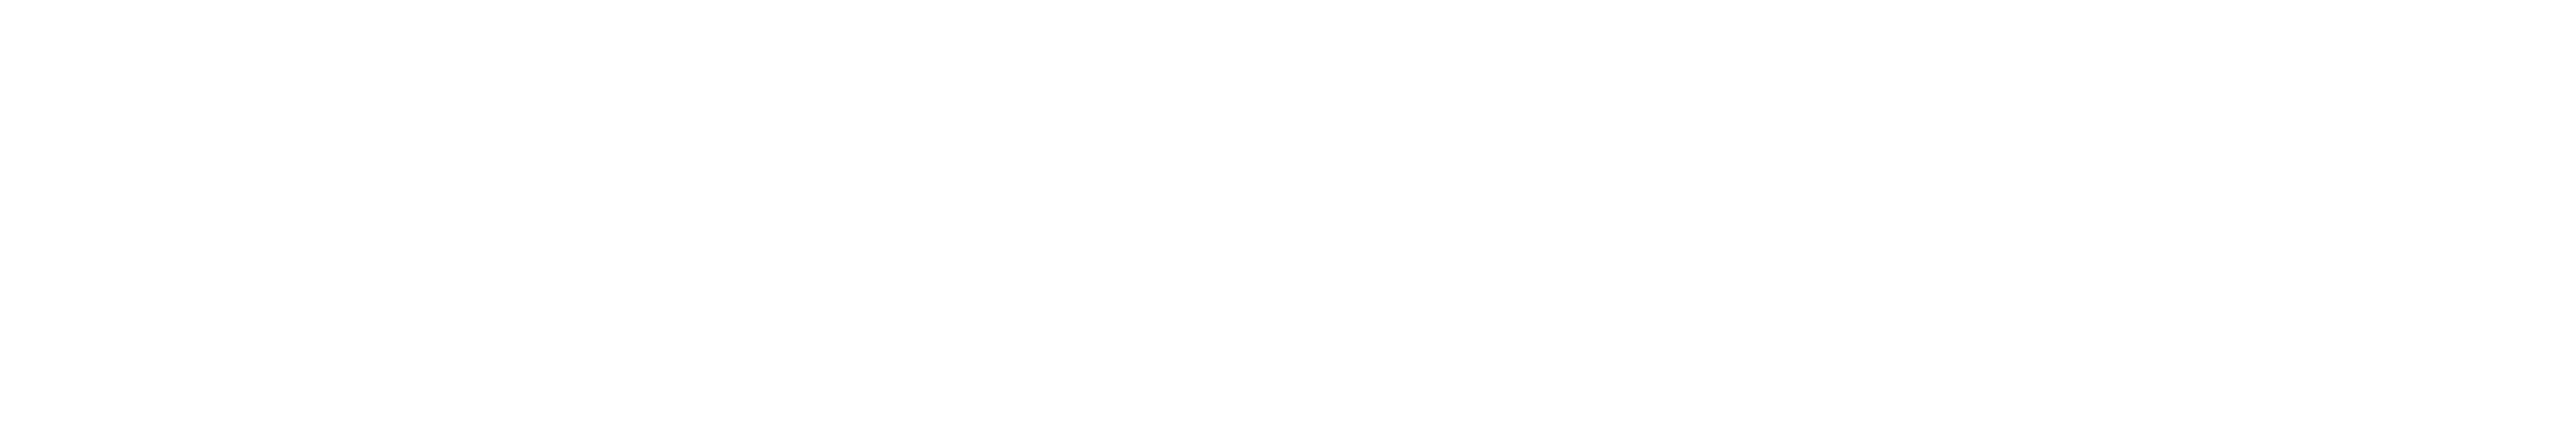 Padelmedia-logo